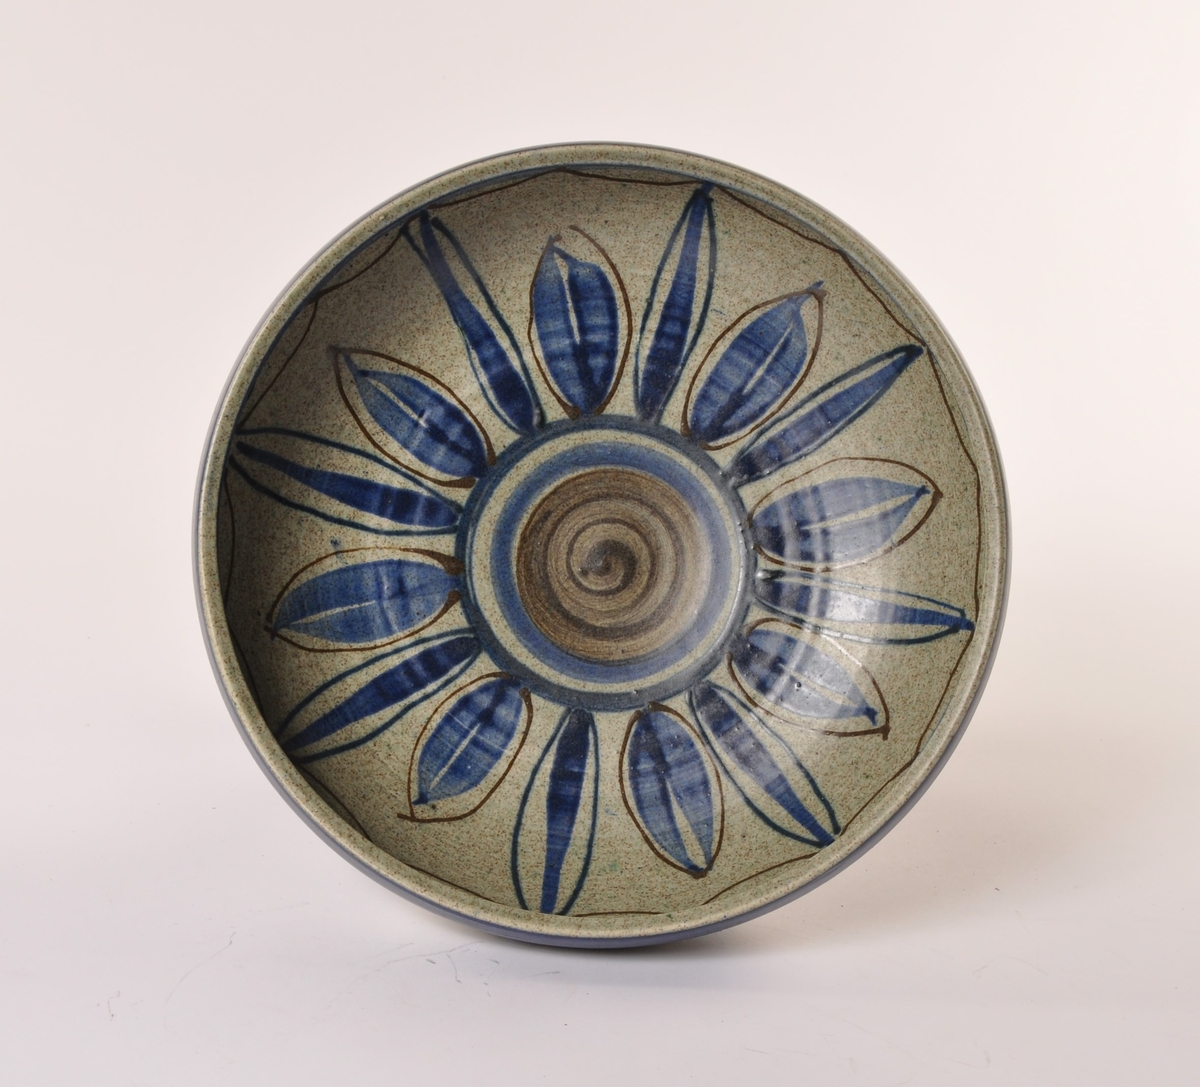 Rundt stettefat i keramikk, glasert i grått, blått og brun. Motiv: stiliserte blomster